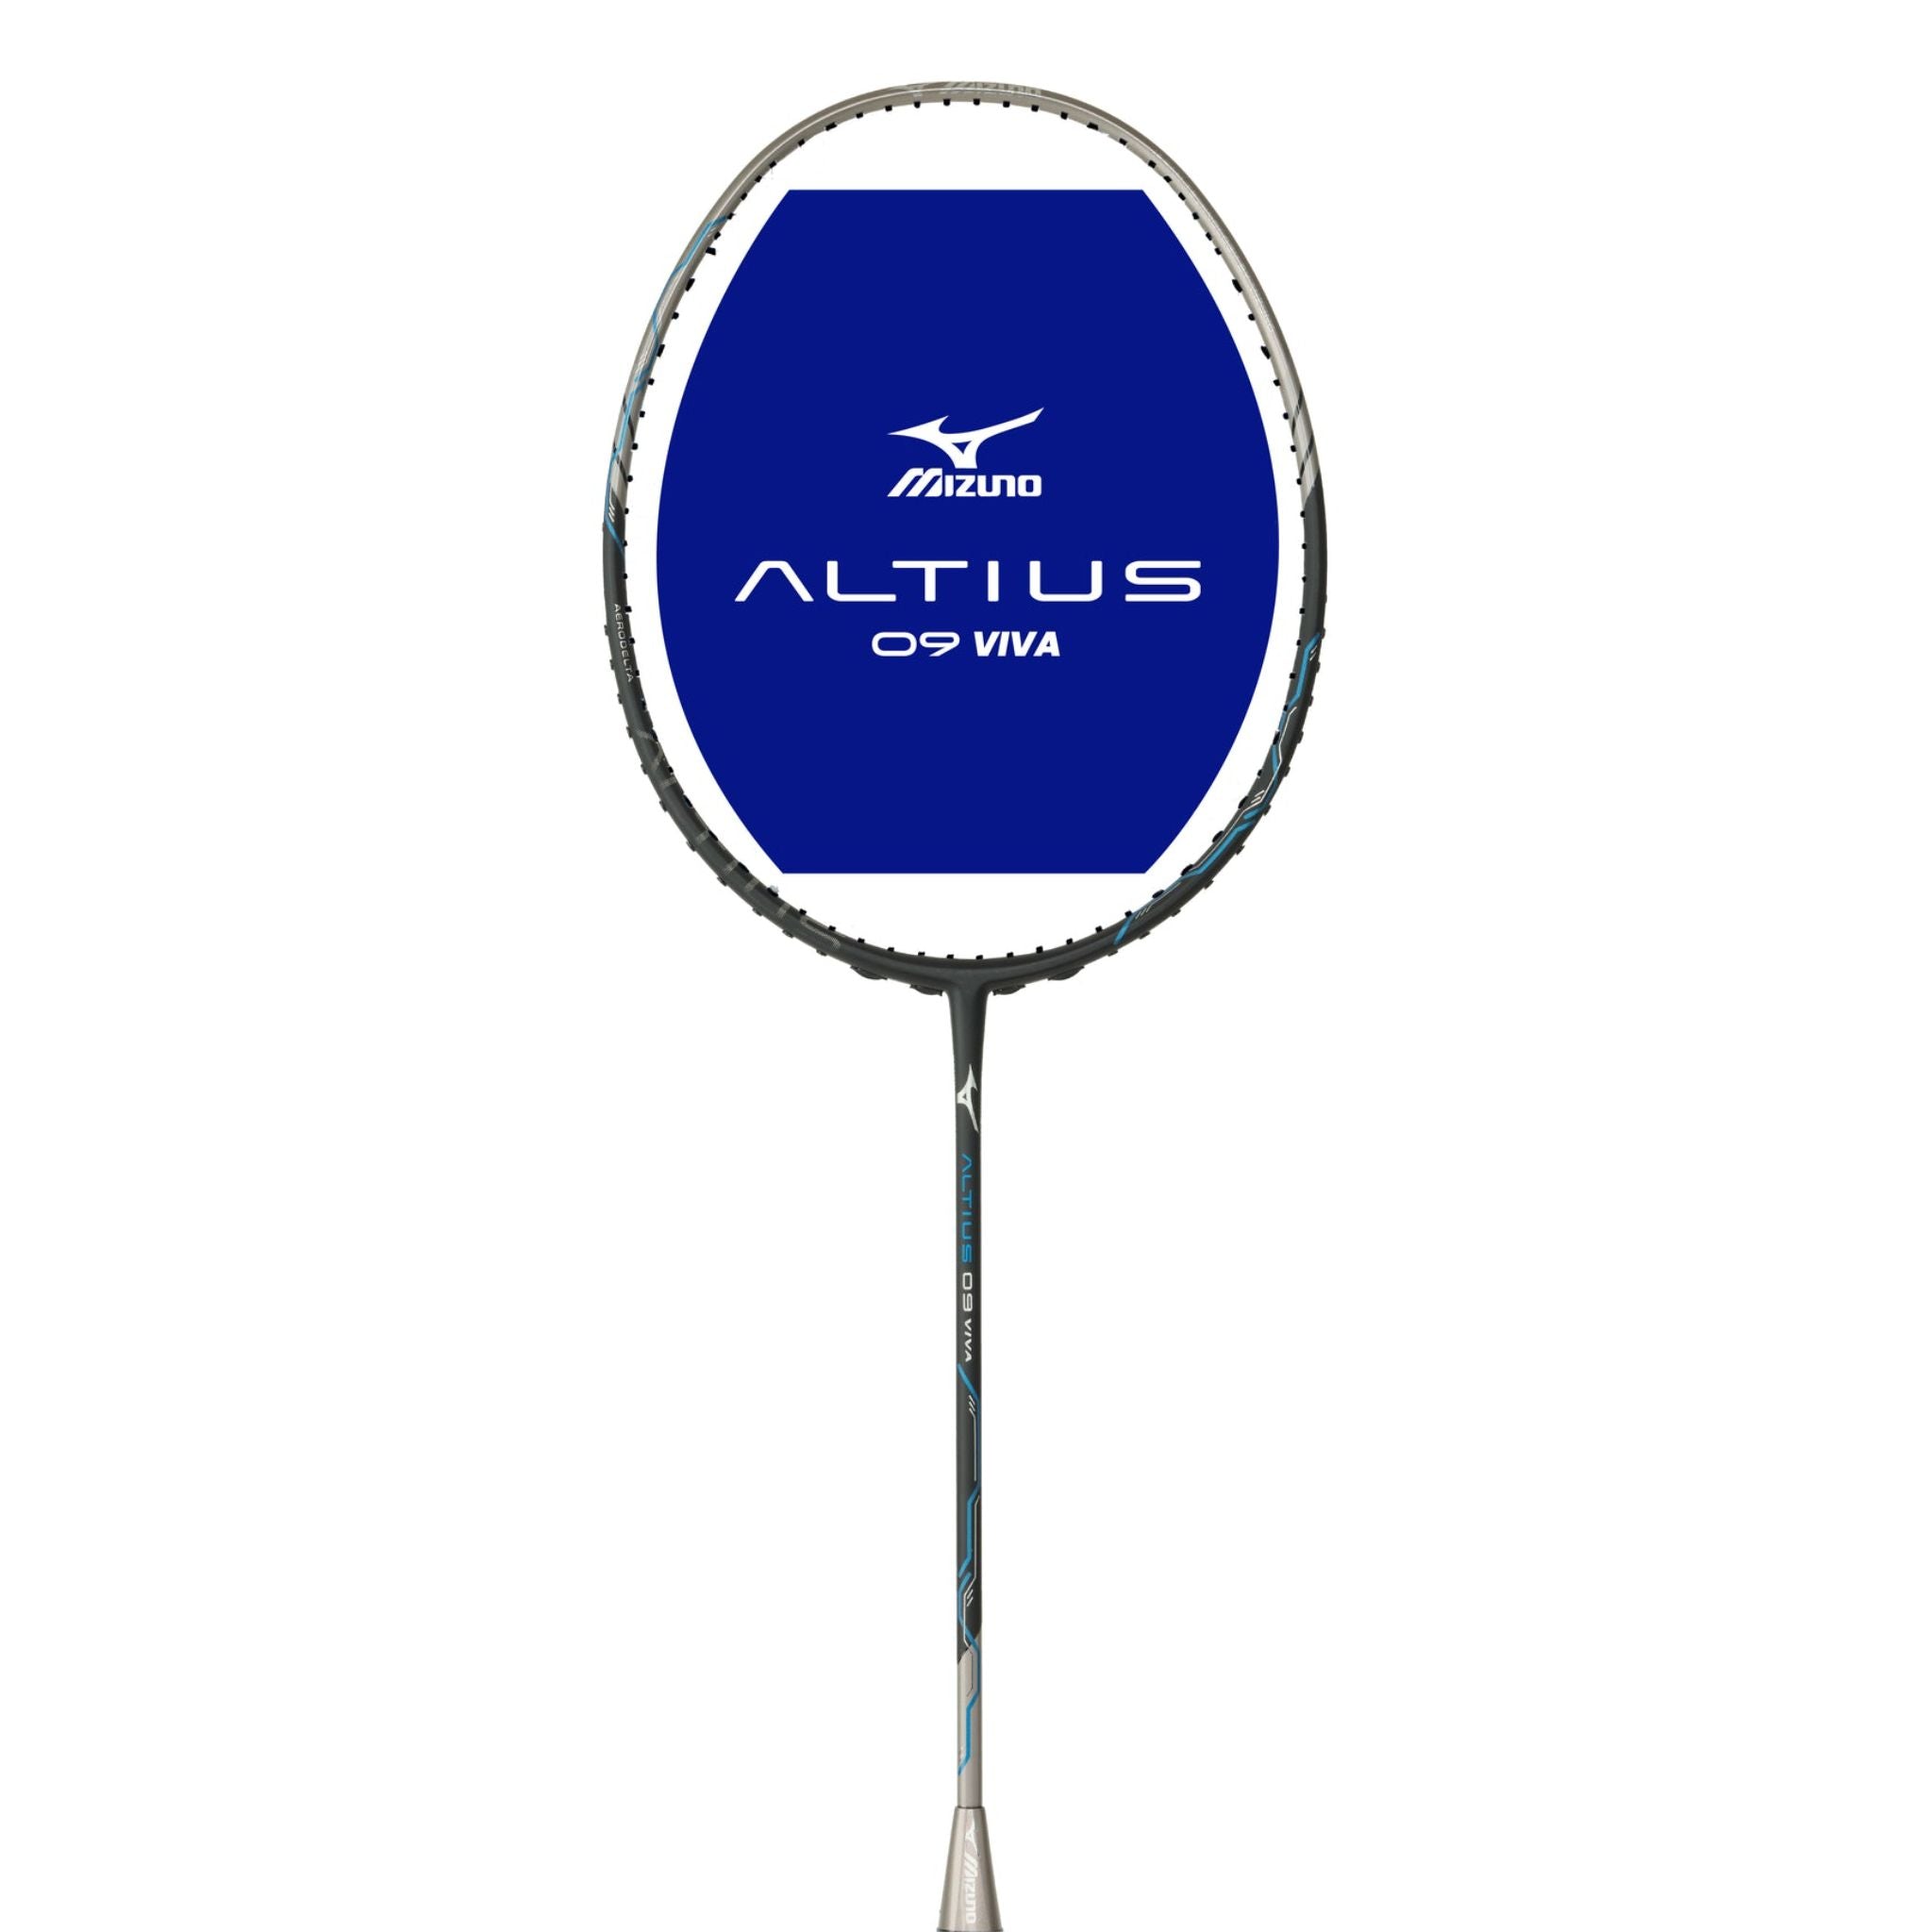 Mizuno Altius 09 Viva Badminton Racket